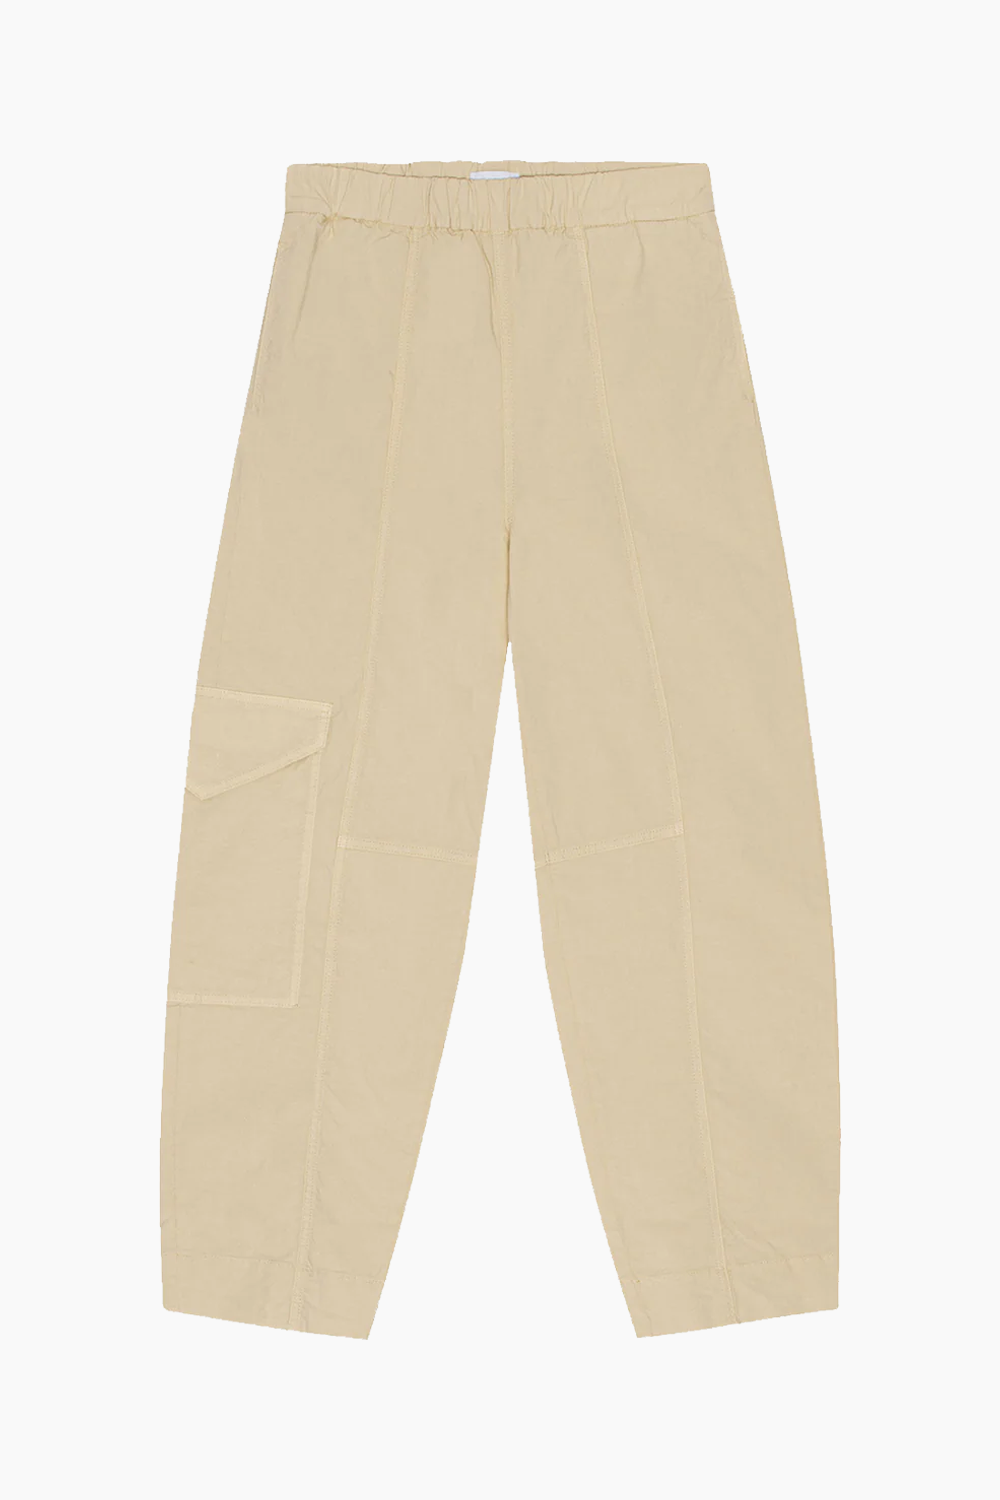 Se Washed Cotton Canvas Elasticated Curve Pants F8073 - Pale Khaki - GANNI - Beige M hos QNTS.dk